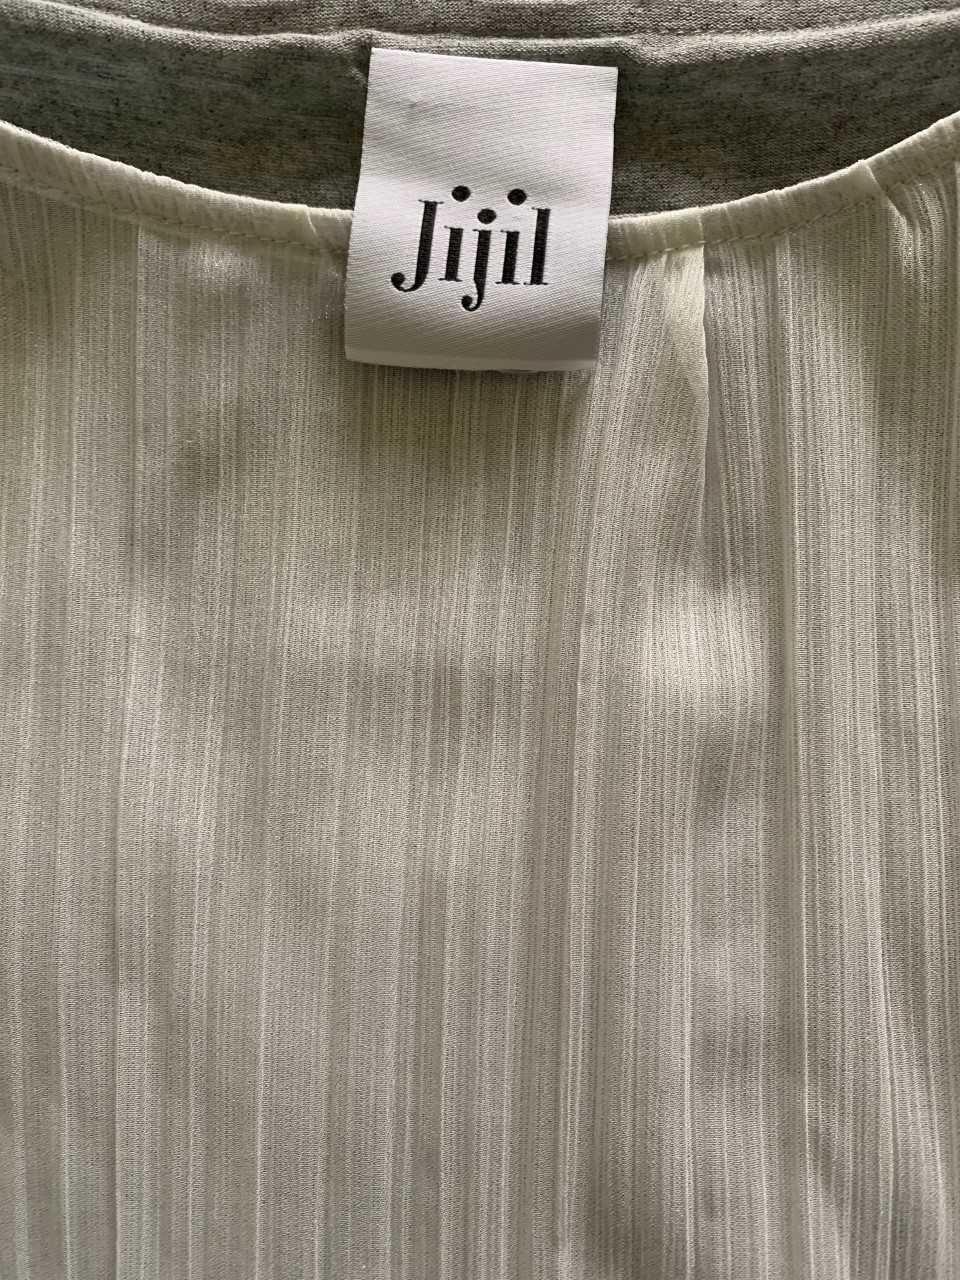 Продам блузу итальянского бренда Jijil